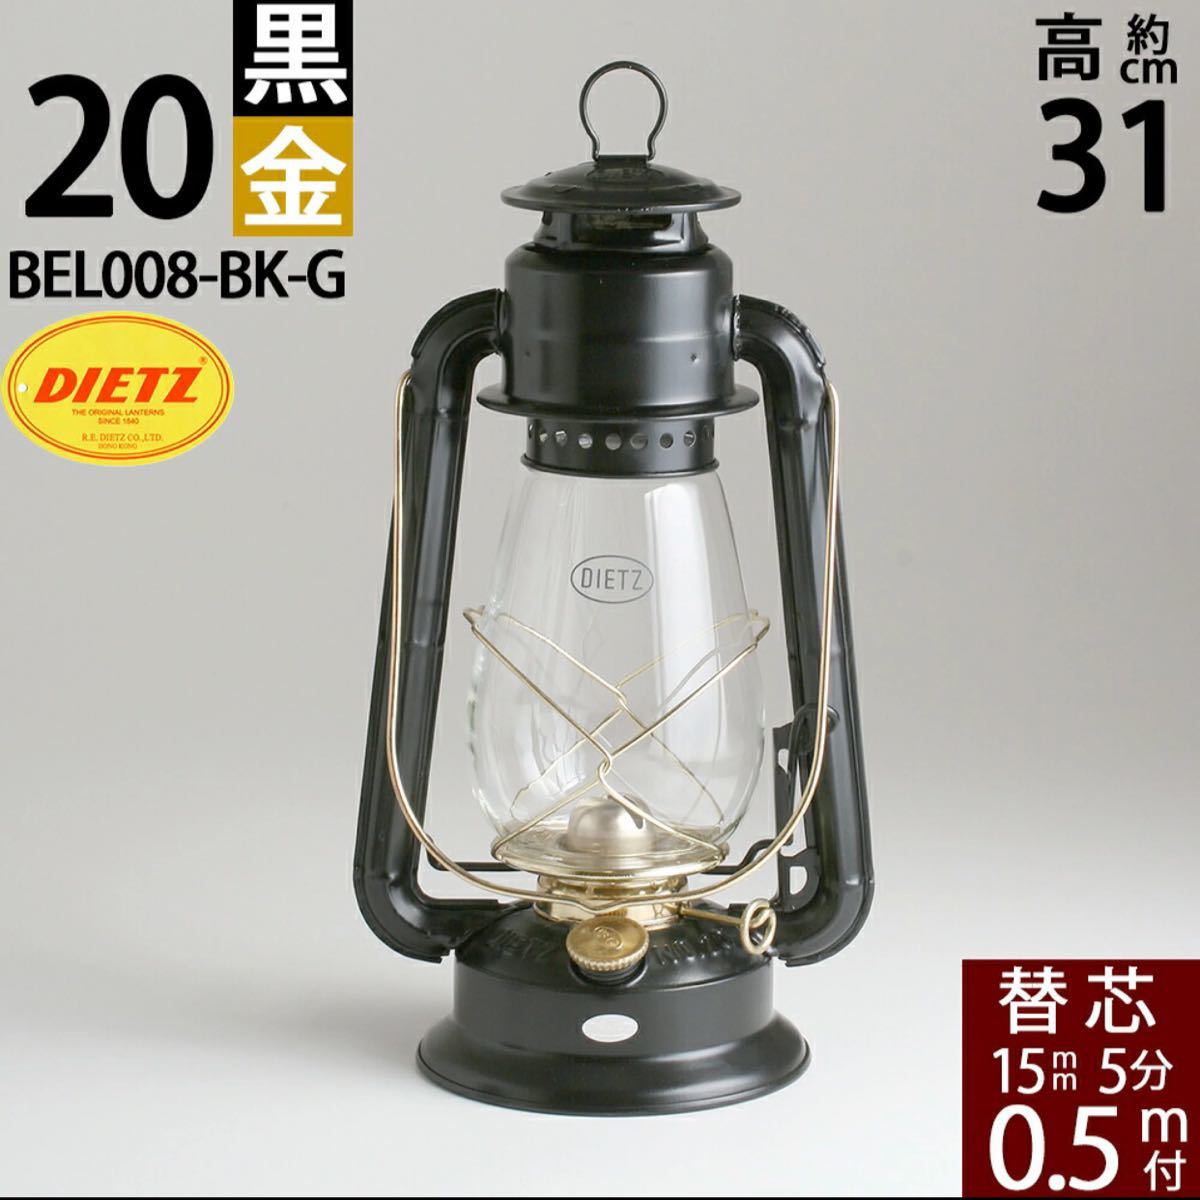 ハリケーンランプ オイルランタン ランプ DIETZ JUNIOR NO.20(BEL008-BK-G) (デイツ20 黒 金)